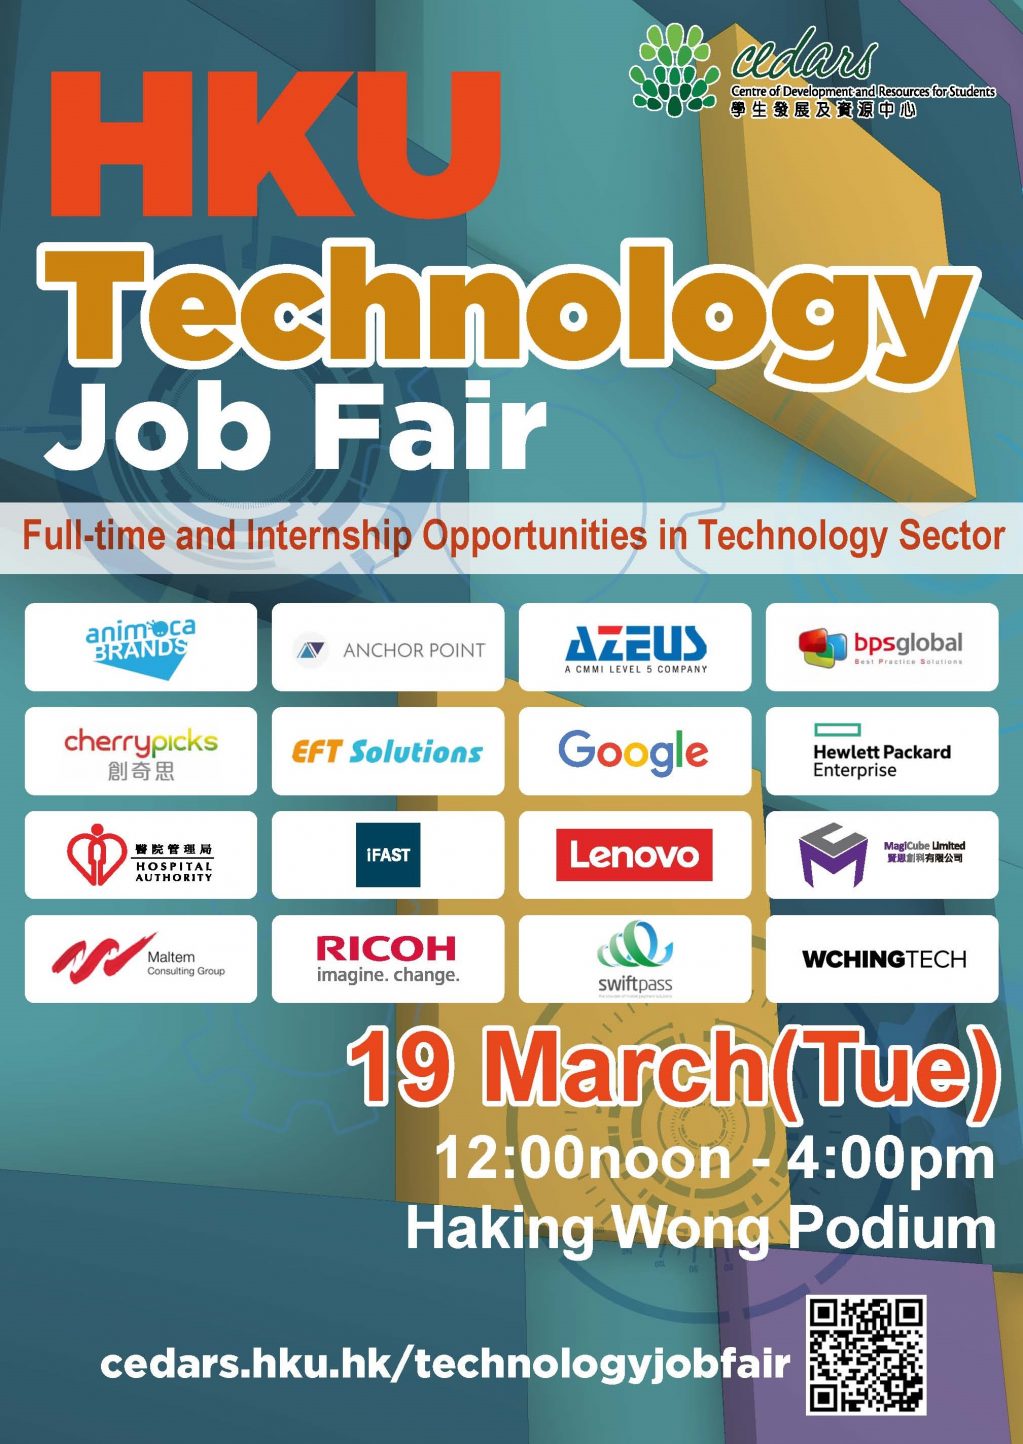 HKU Technology Job Fair